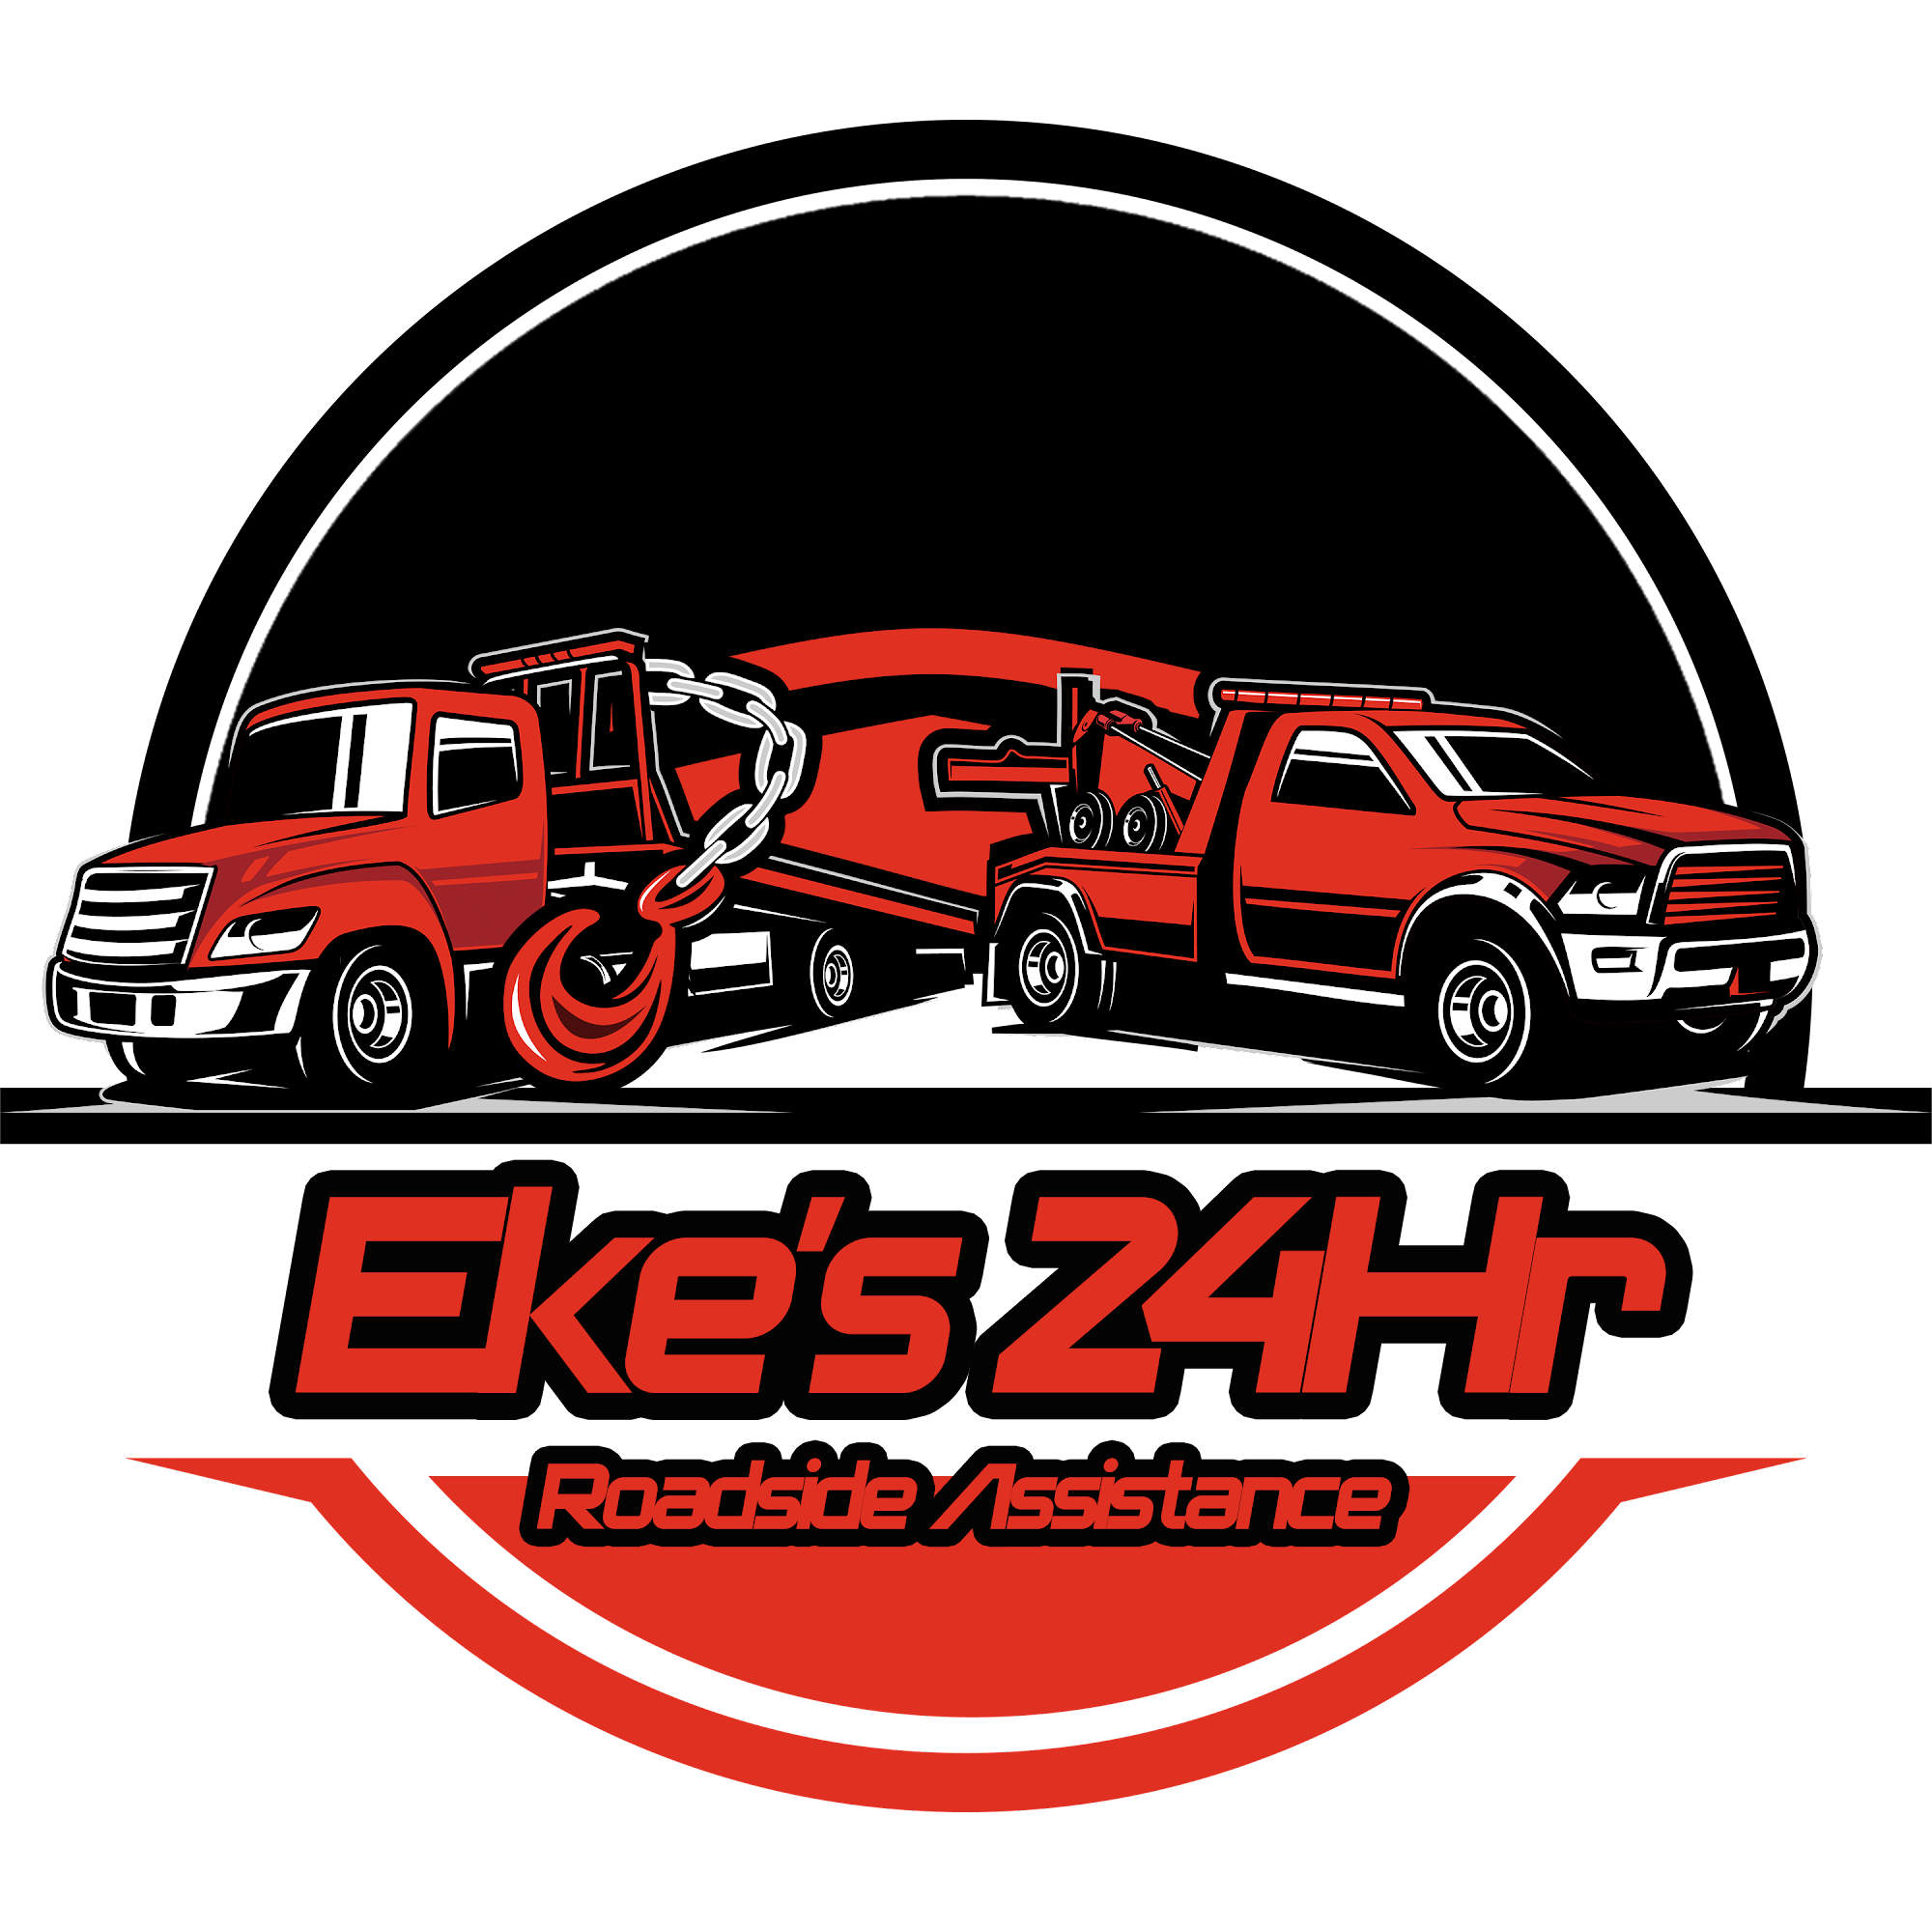 Eke's 24Hr Roadside Assistance